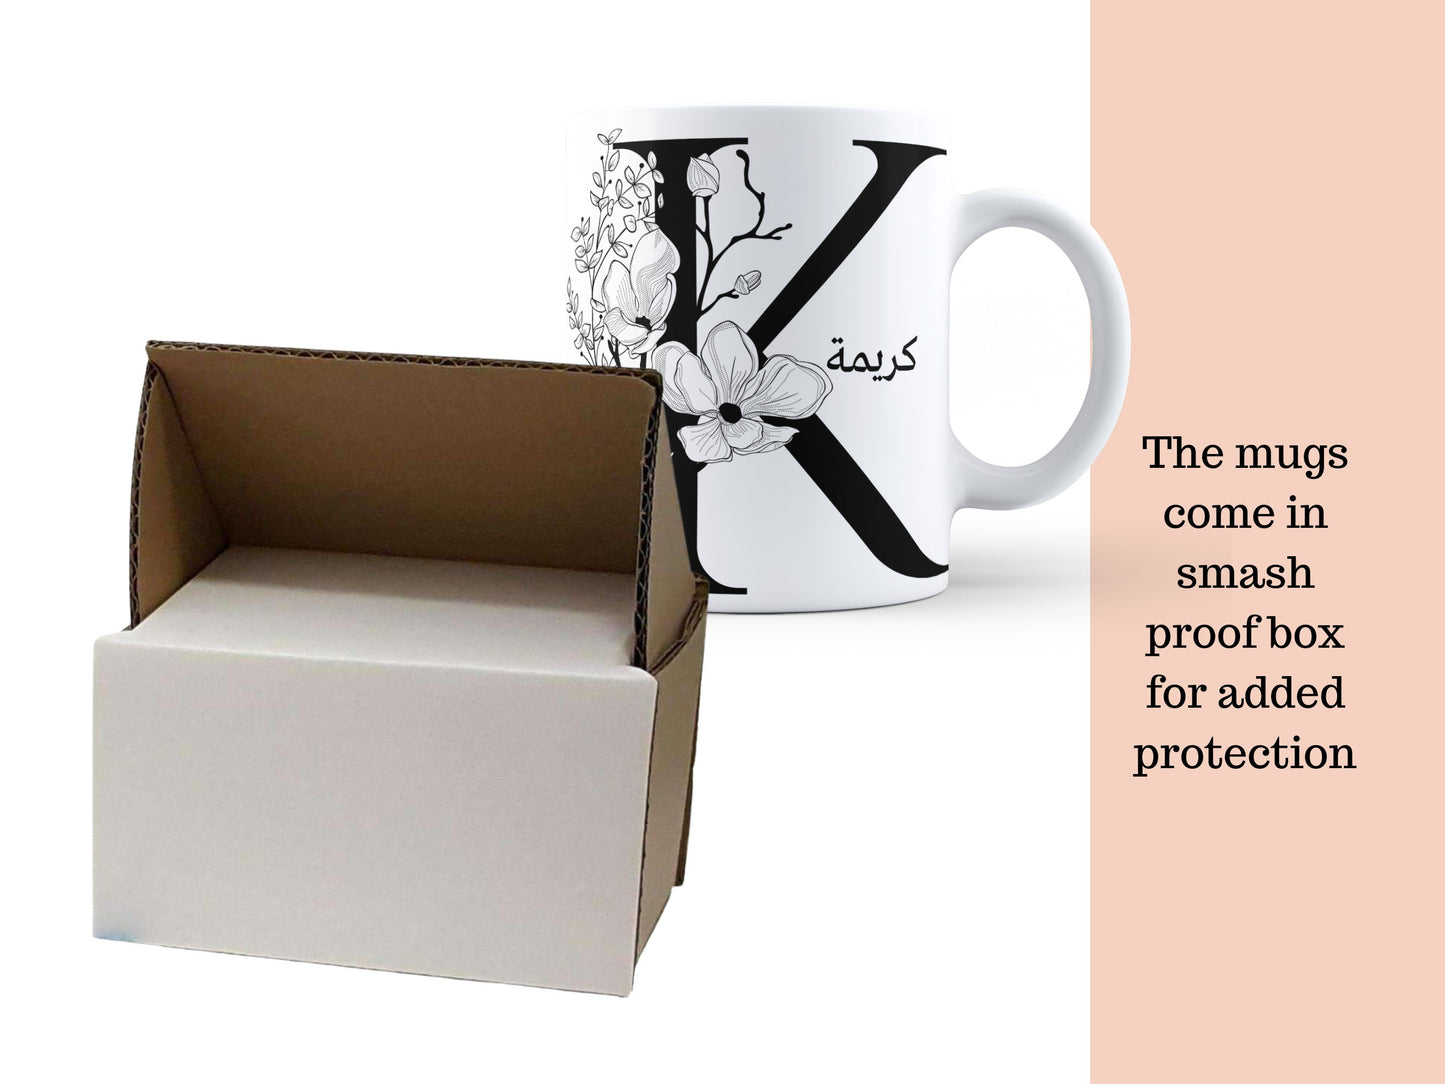 Name Mug Ramadan, Muslim Mug, Eid Mug, Personalised Mug, Arabic Mug, Muslimah Mug, Arabian Mug, Ramadan Mug, Coffee Tea Mug